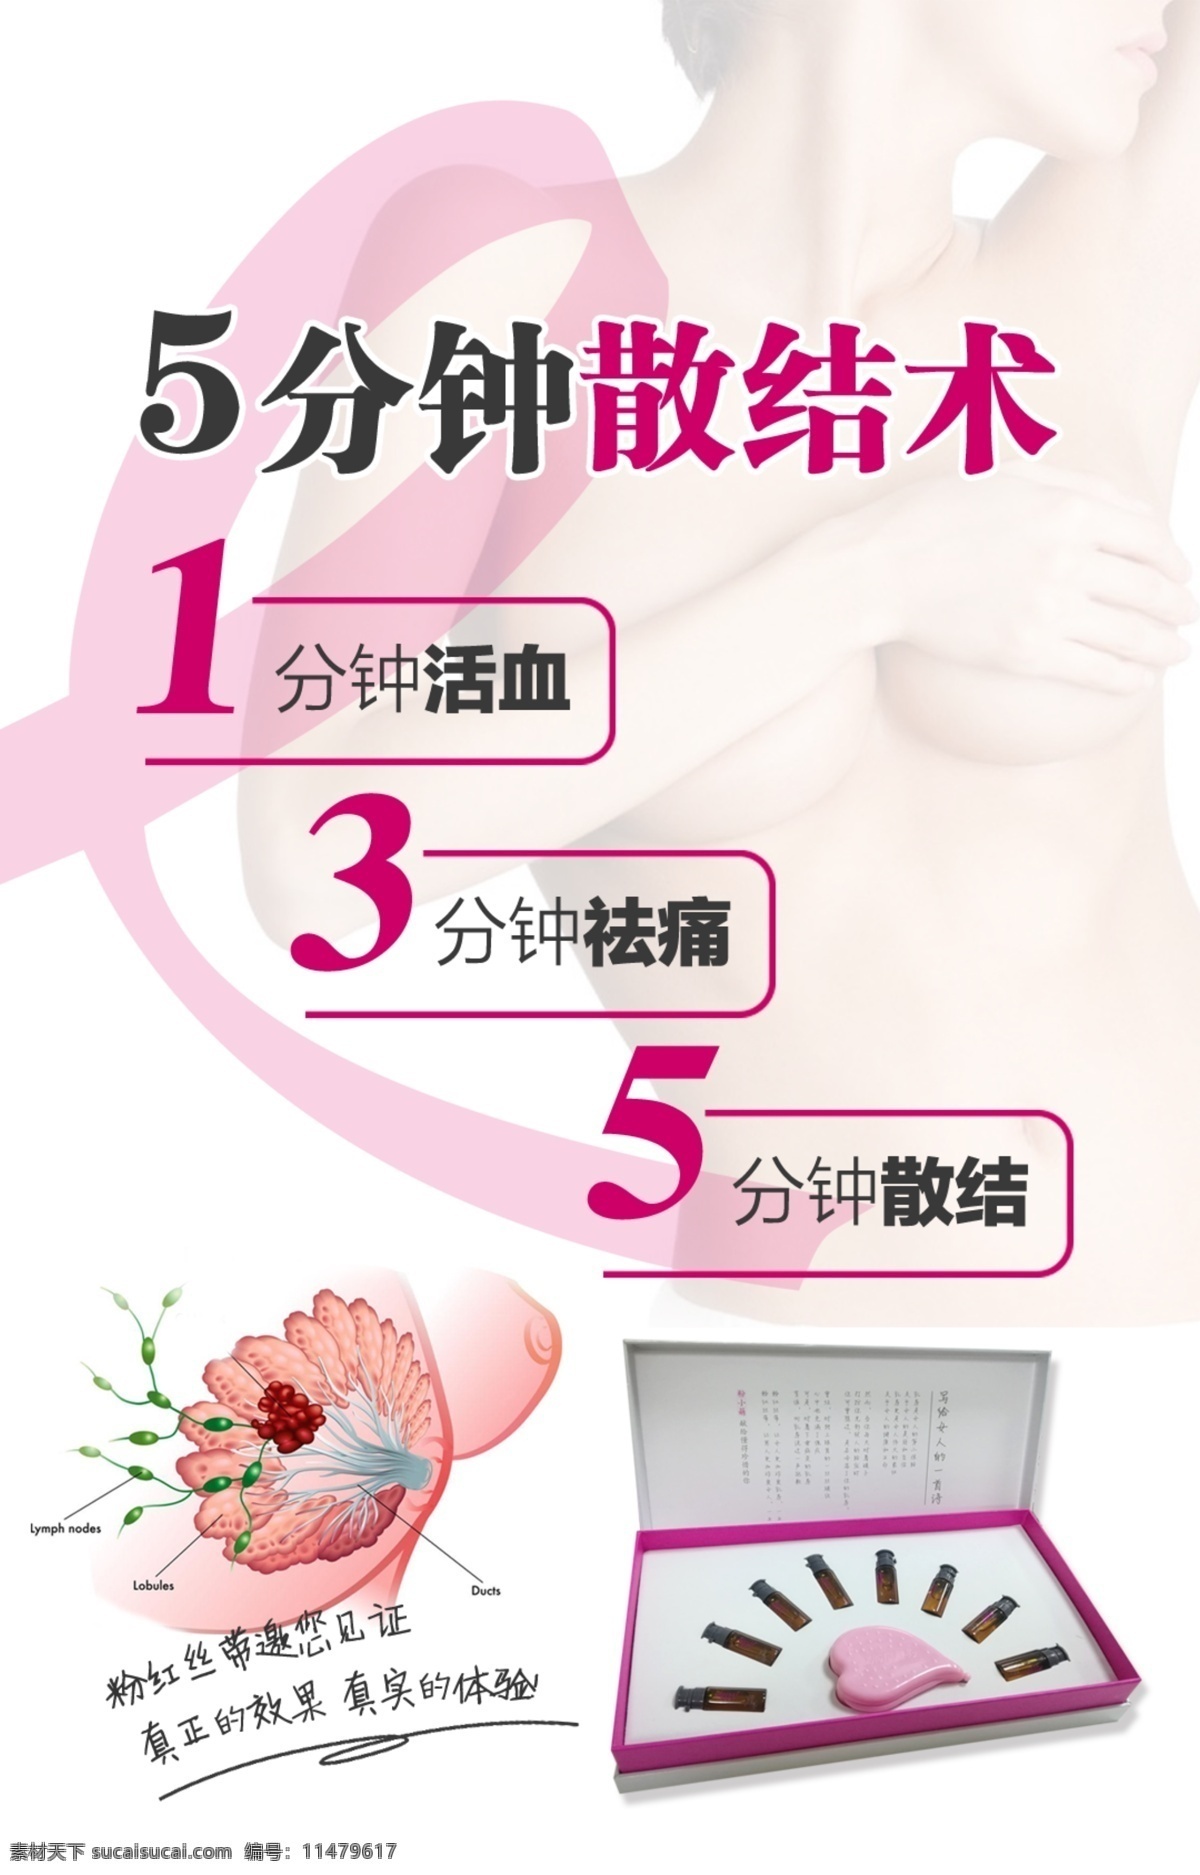 粉红丝带 预防乳房疾病 海报 养生海报 宣传单 宣传画 乳房散结 保护女性